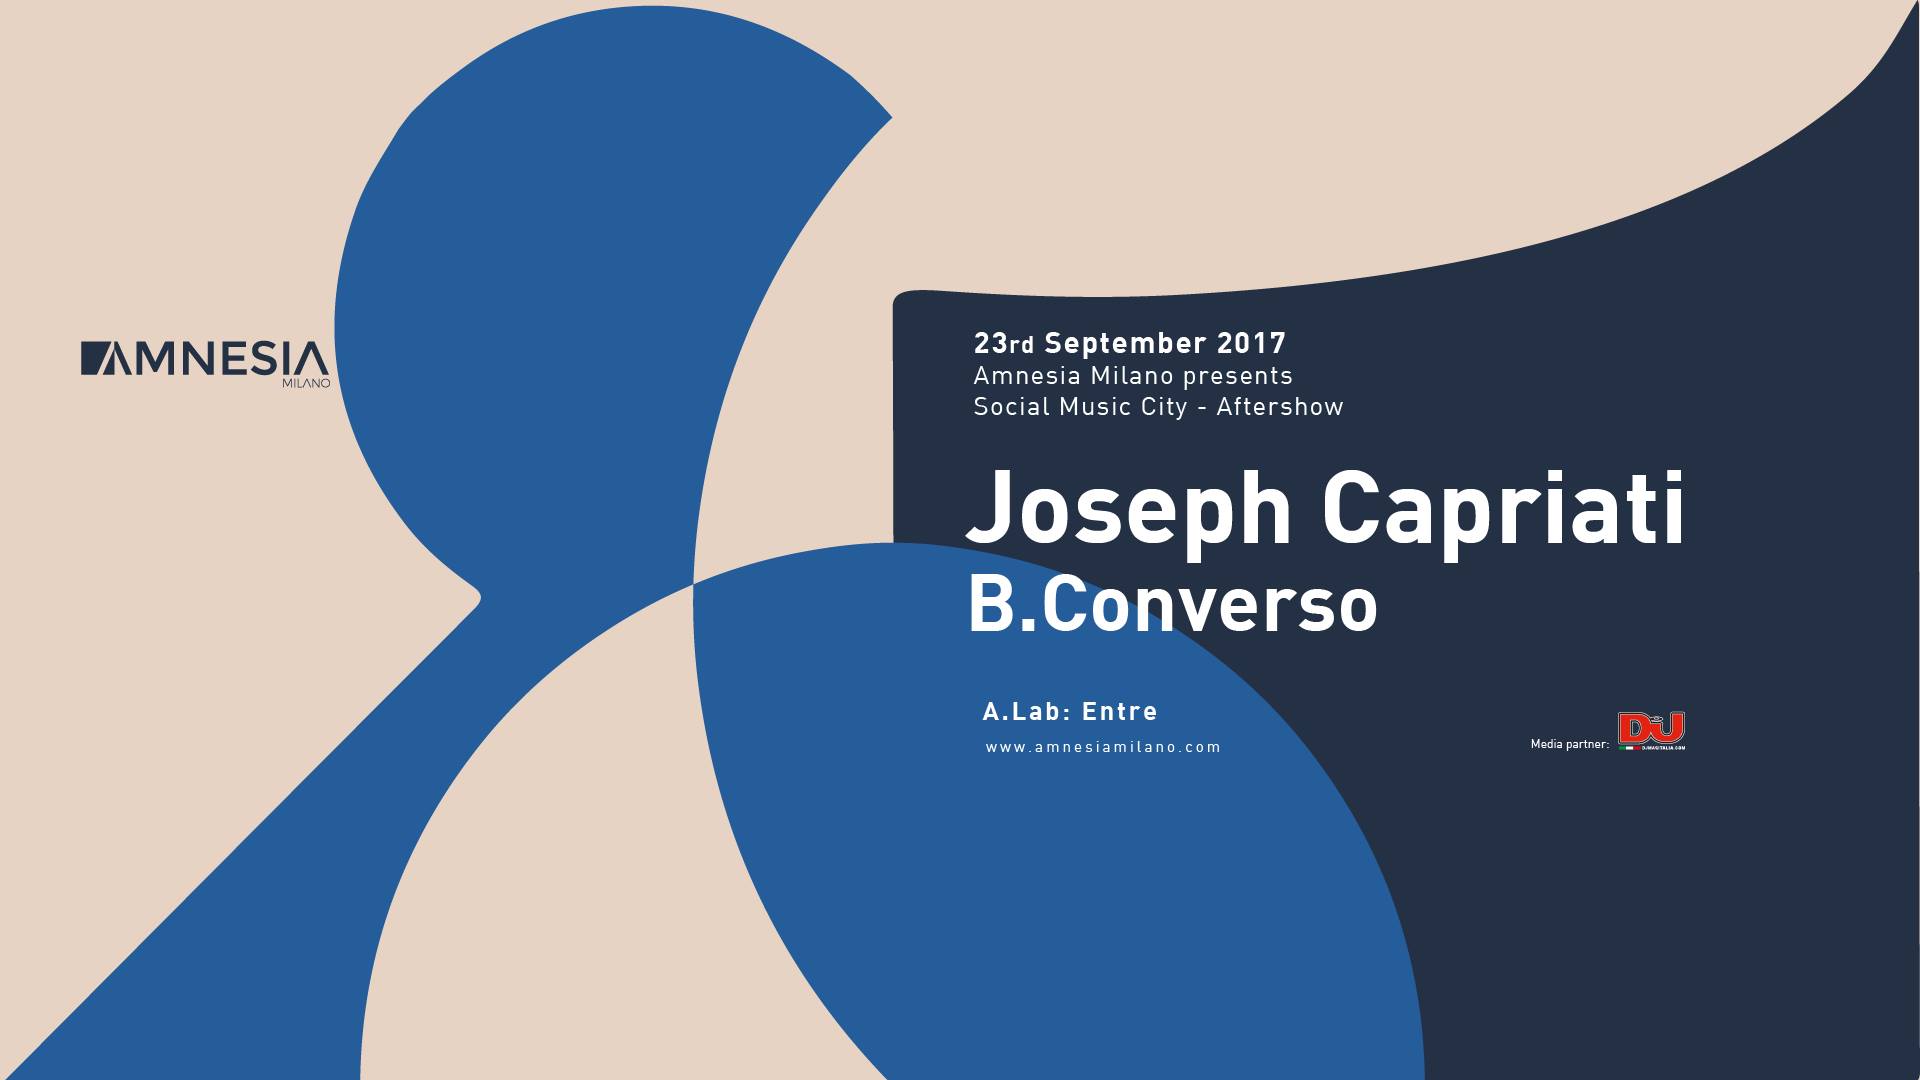 JOSEPH CAPRIATI AMNESIA MILANO 23 SETTEMBRE 2017